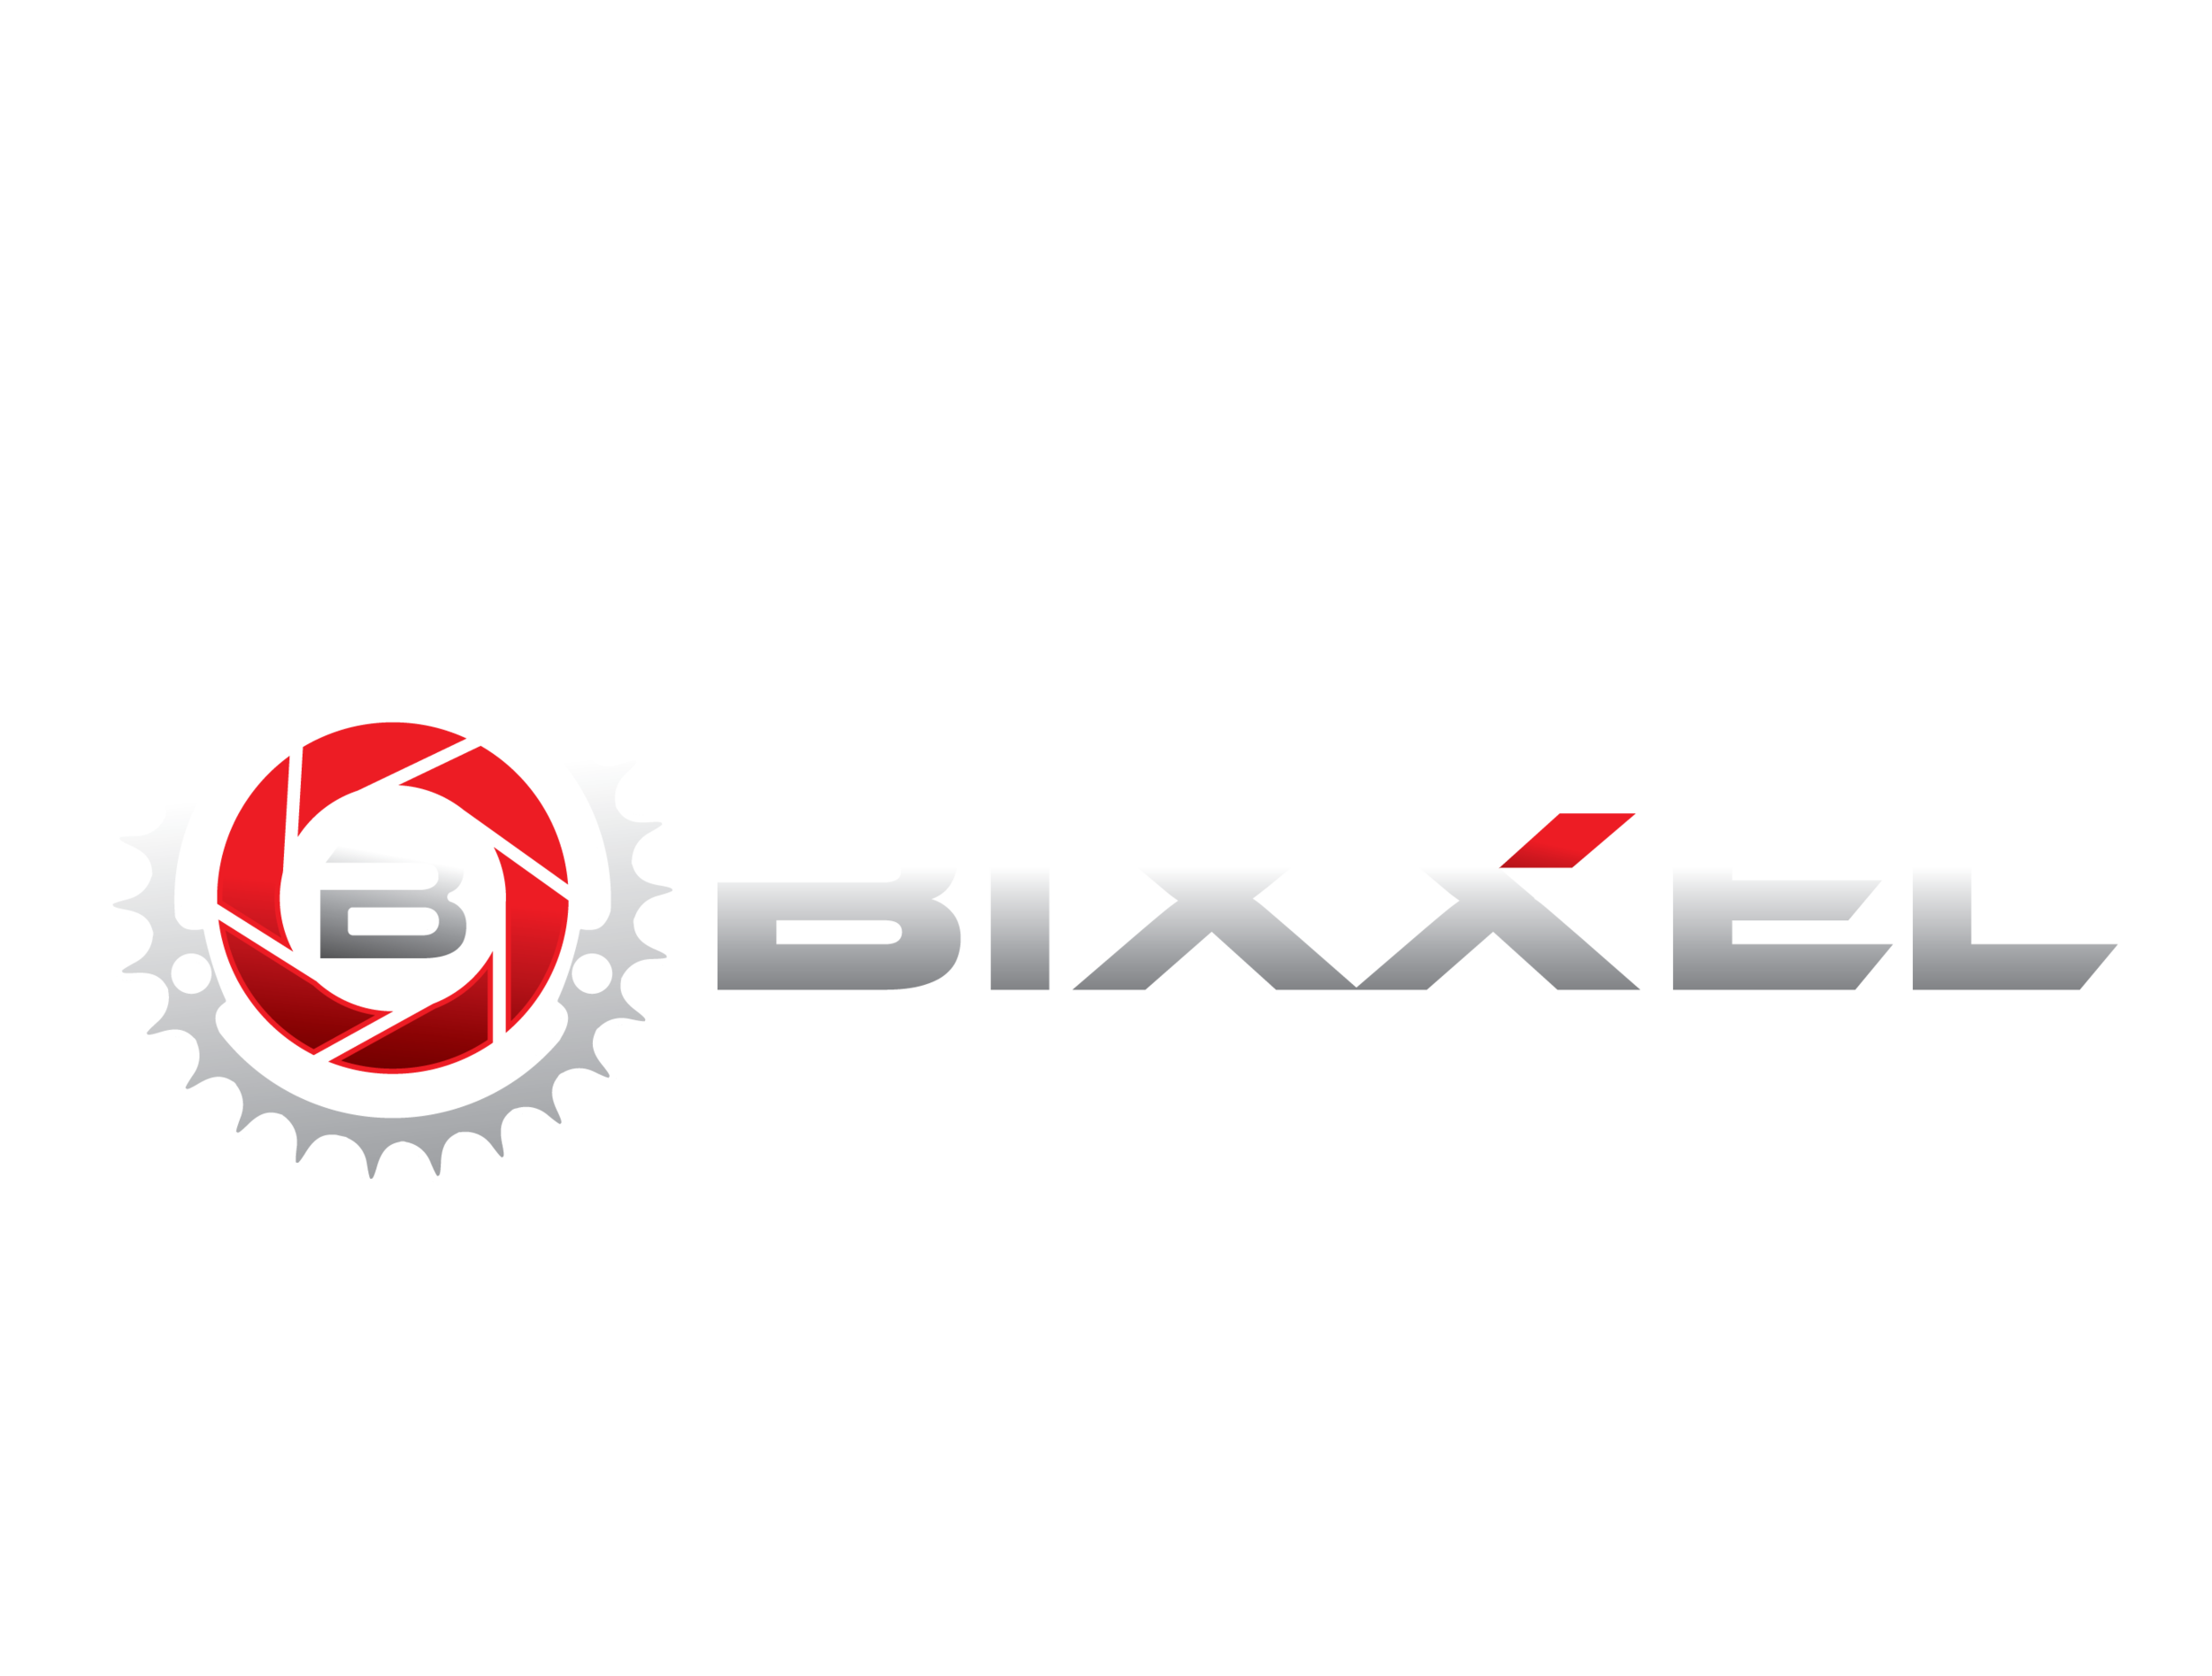 Bixxel Media